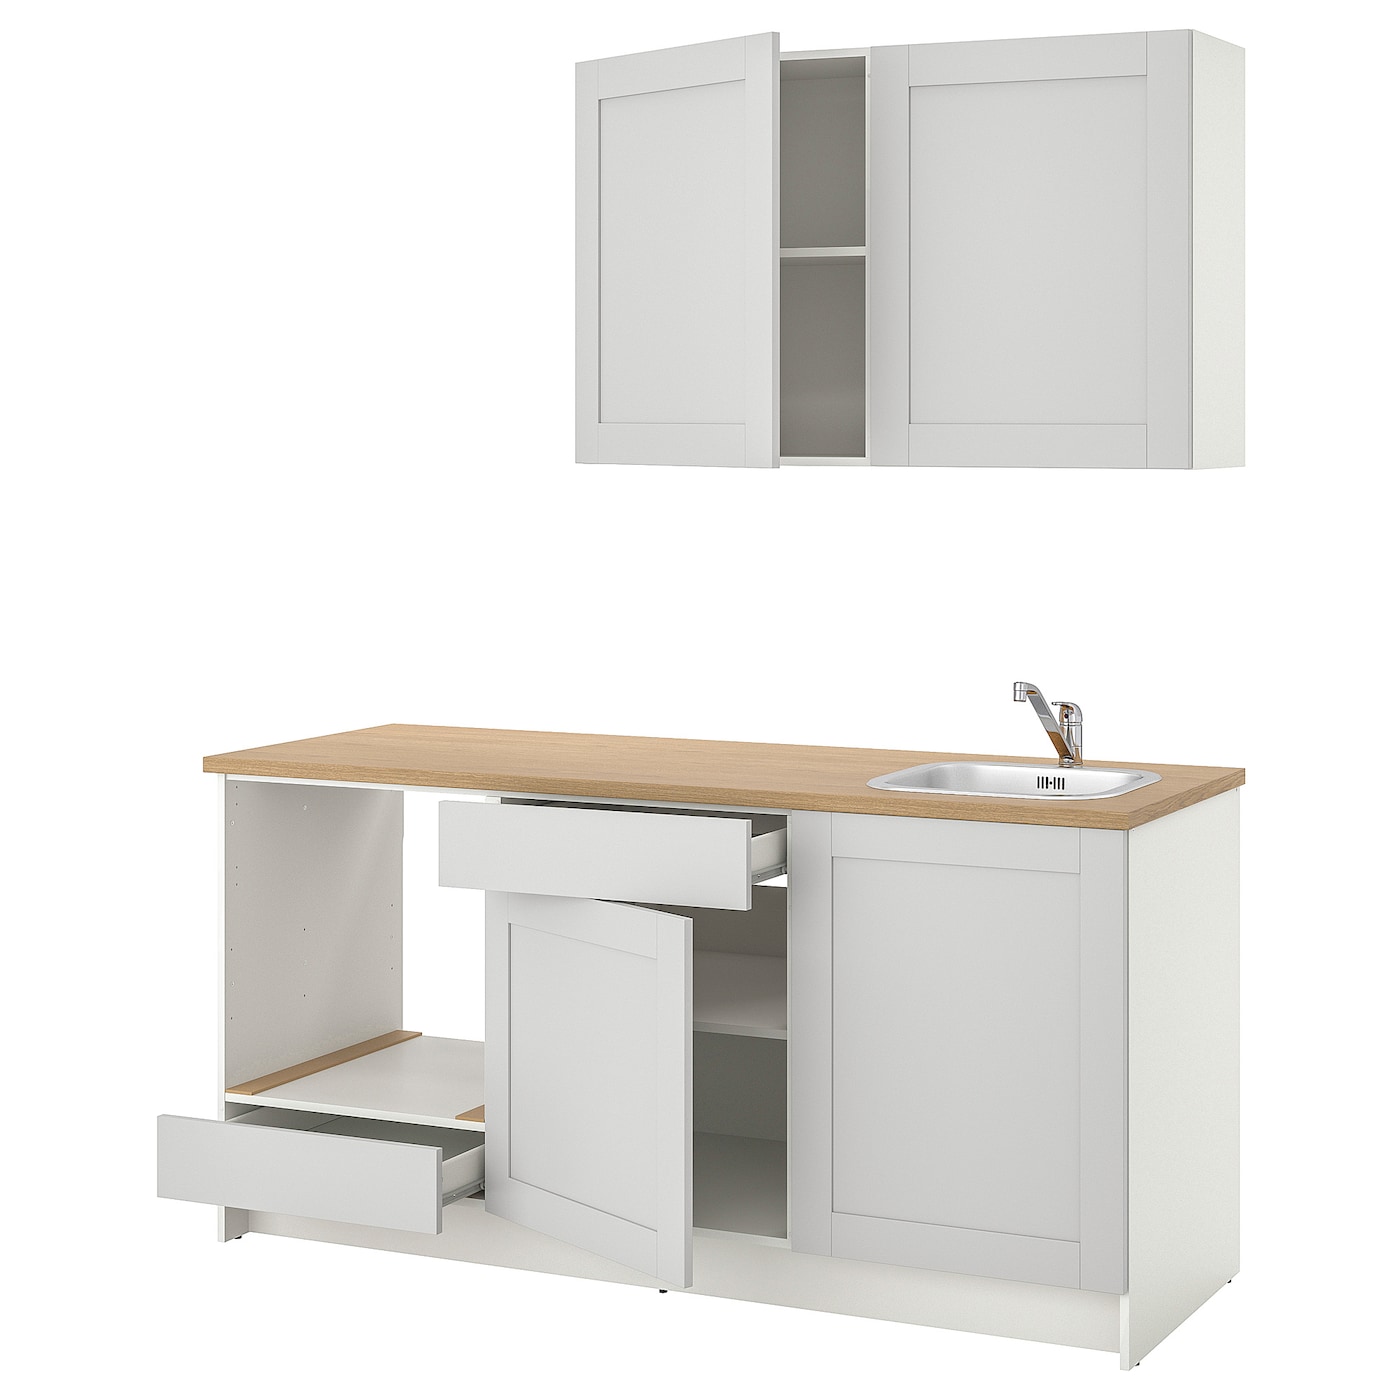 Кухонная комбинация для хранения - KNOXHULT IKEA/ КНОКСХУЛЬТ ИКЕА, 180 см, бежевый/серый